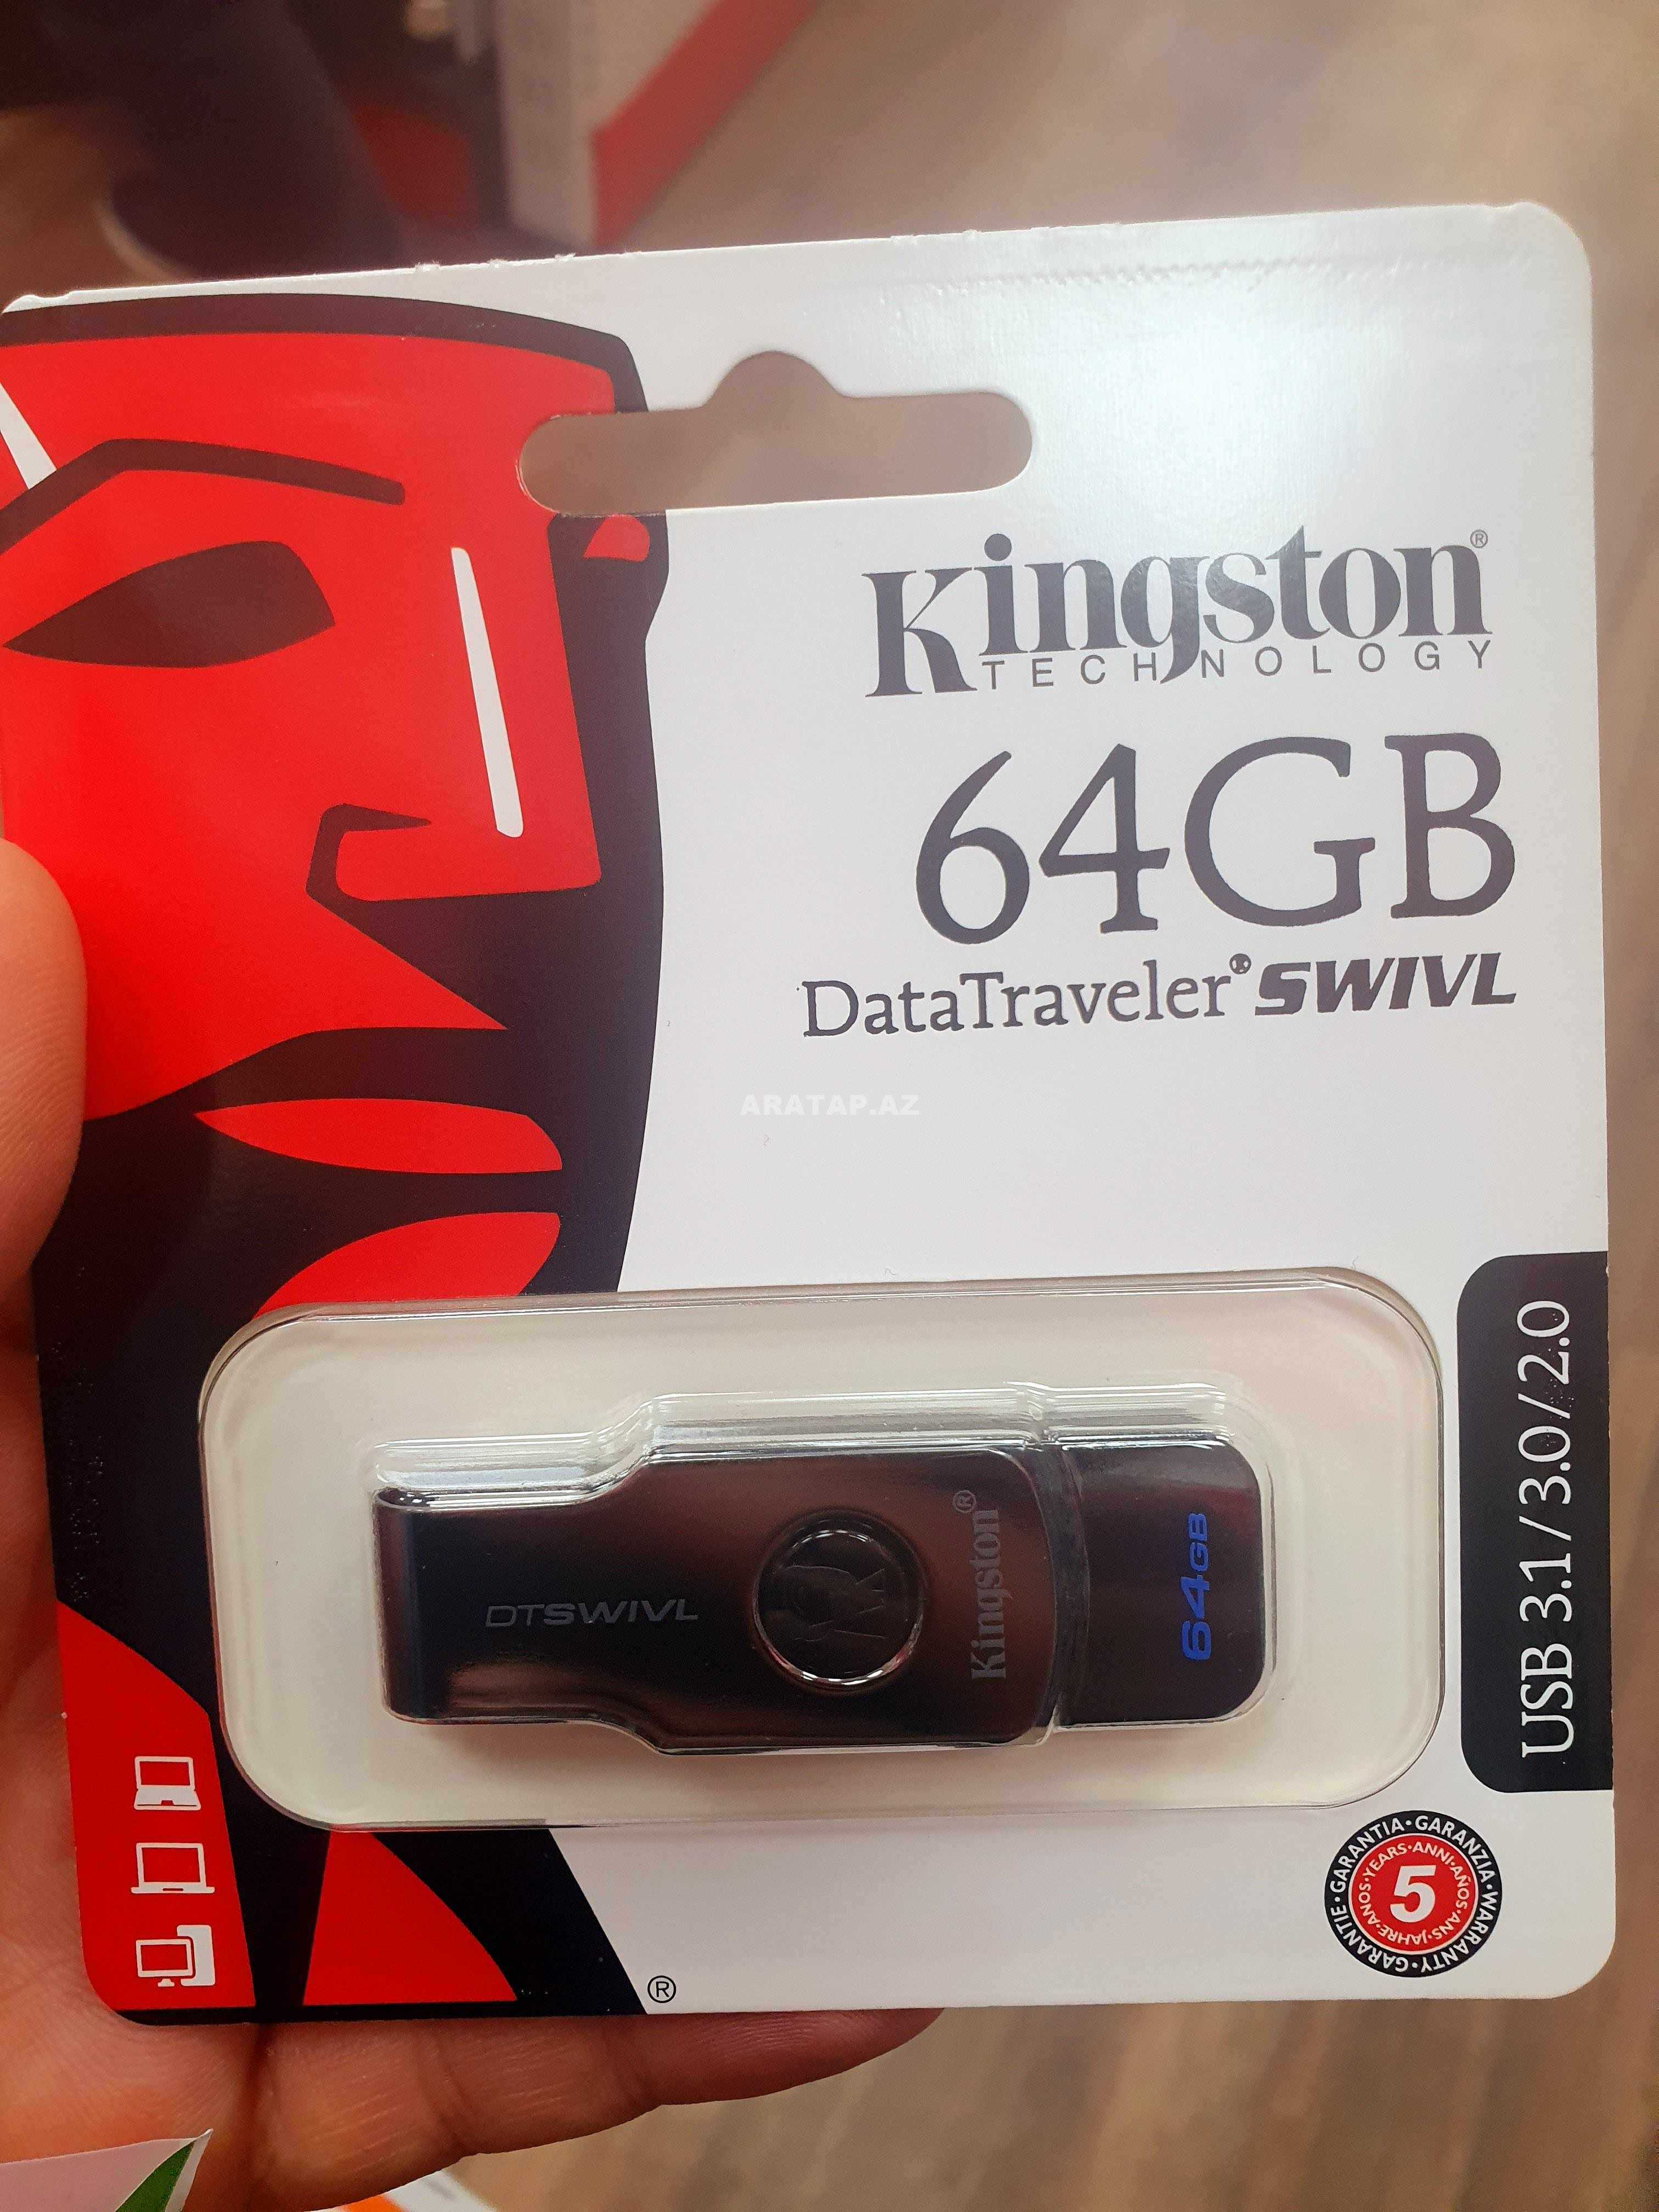 Kingston 64 Gb Usb 3.0 Flaşkart Metal SWISL